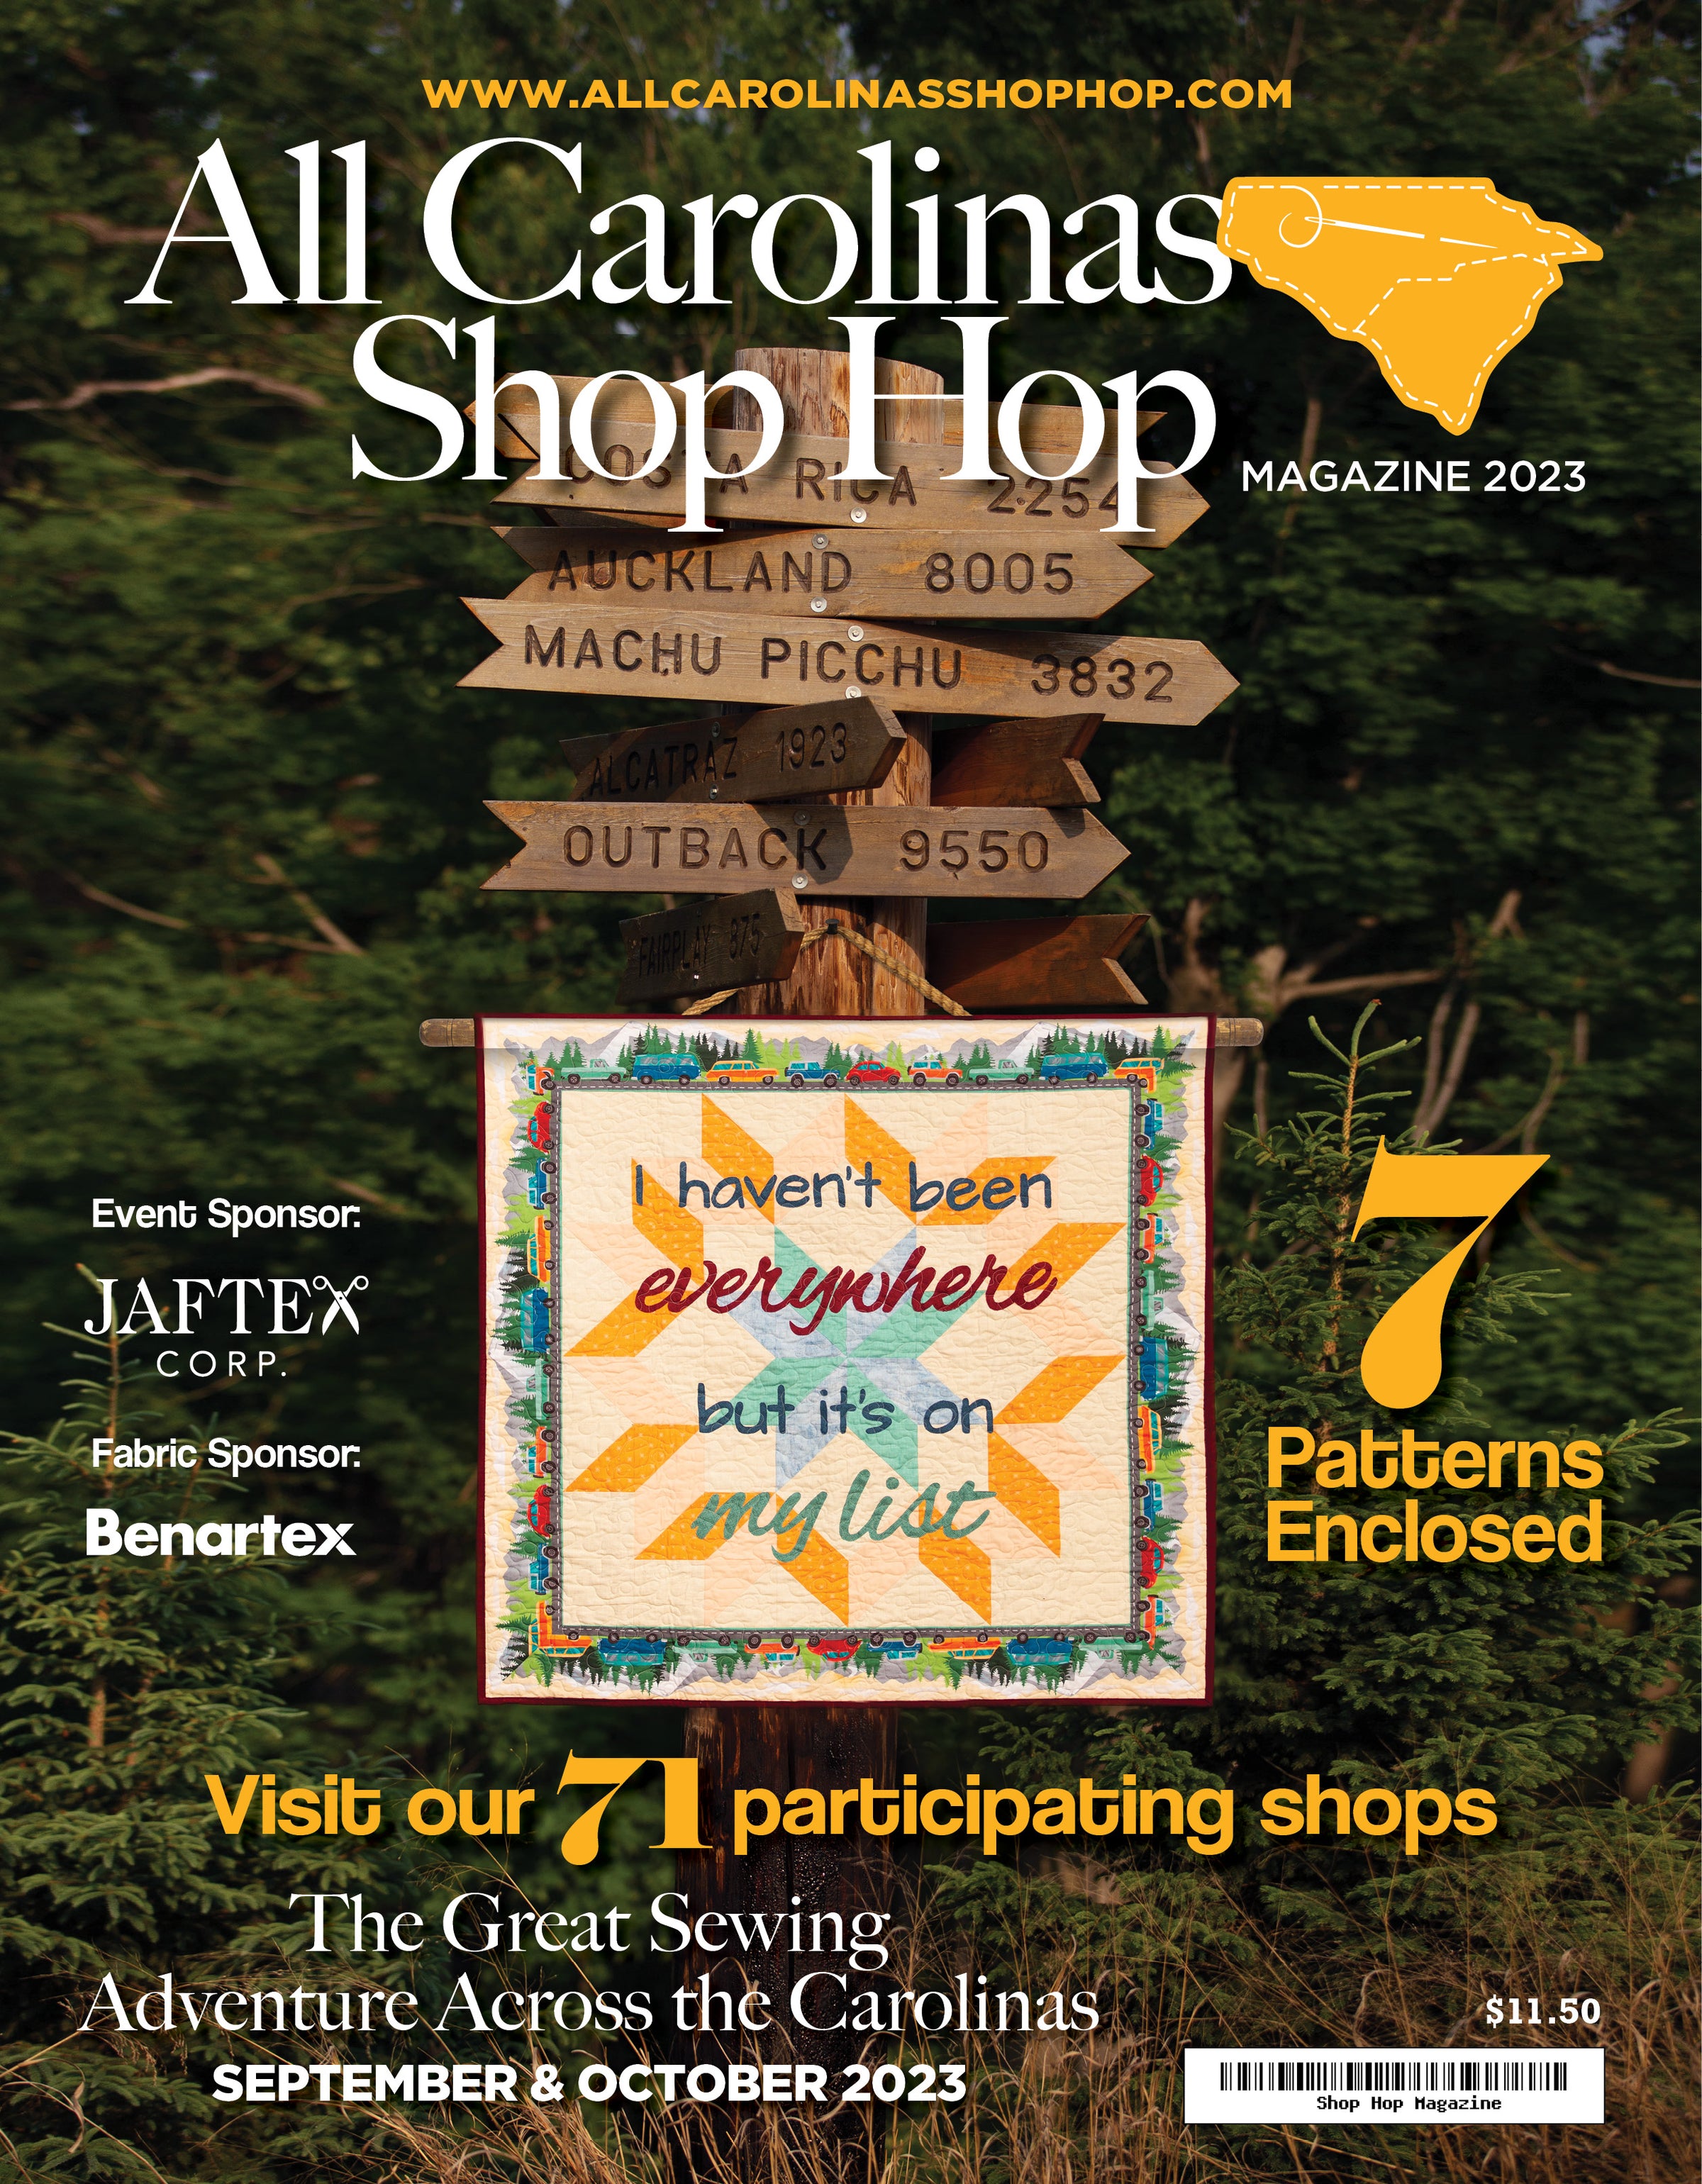 "All Carolinas Shop Hop Magazine 2023"